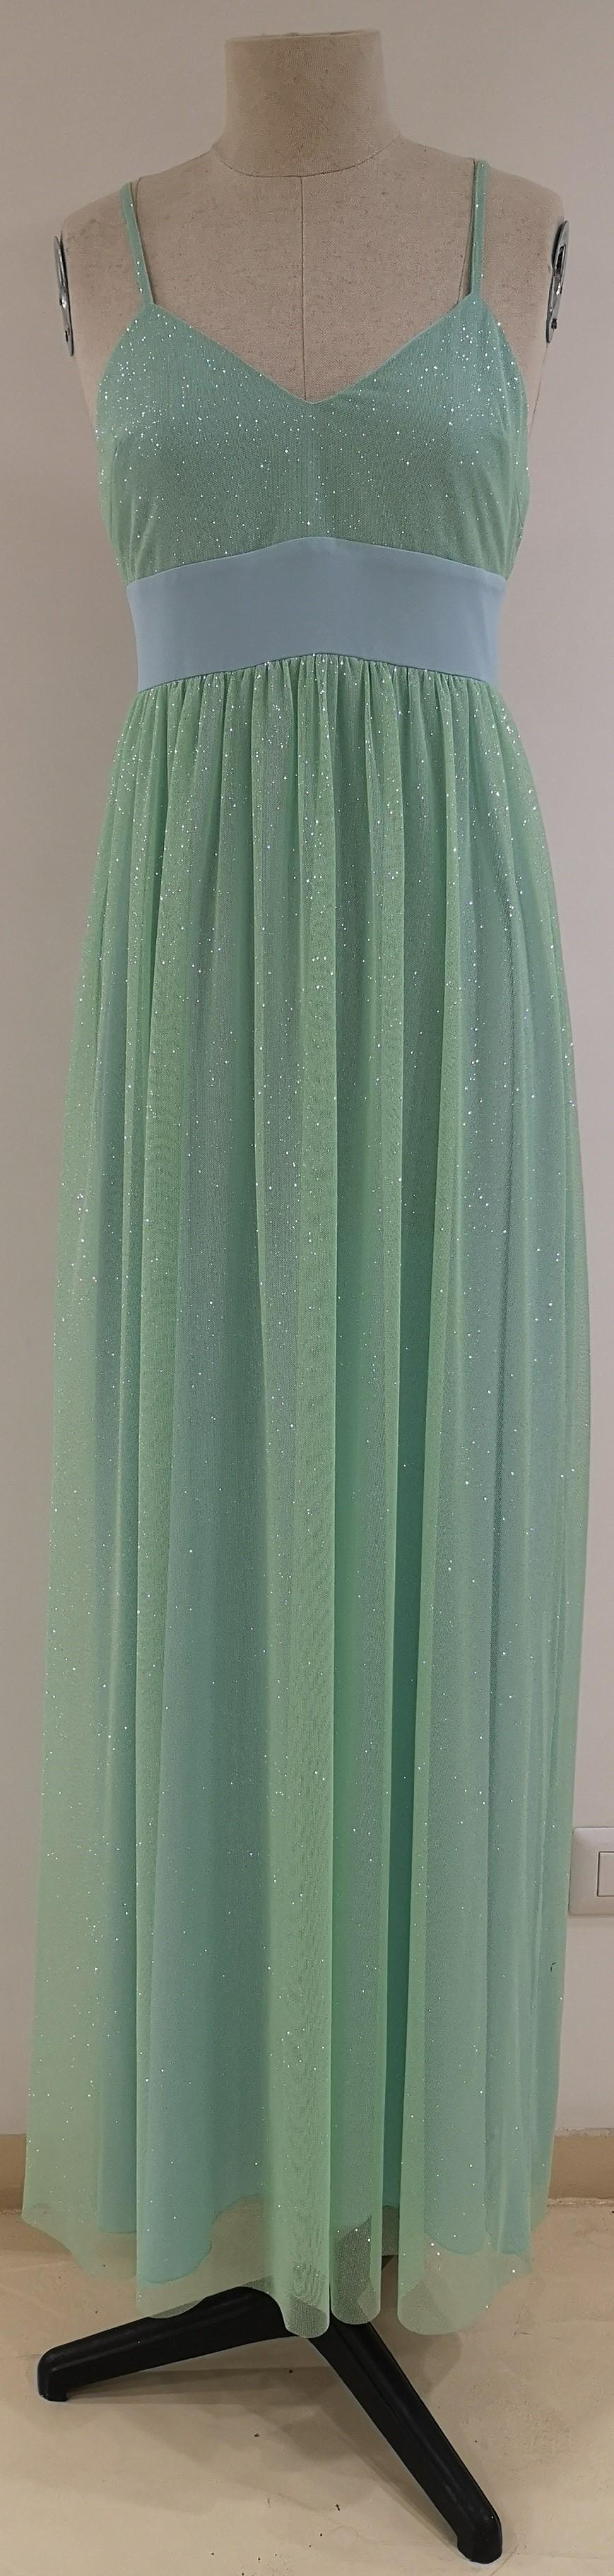 Chelidonia green glitter long dress 1